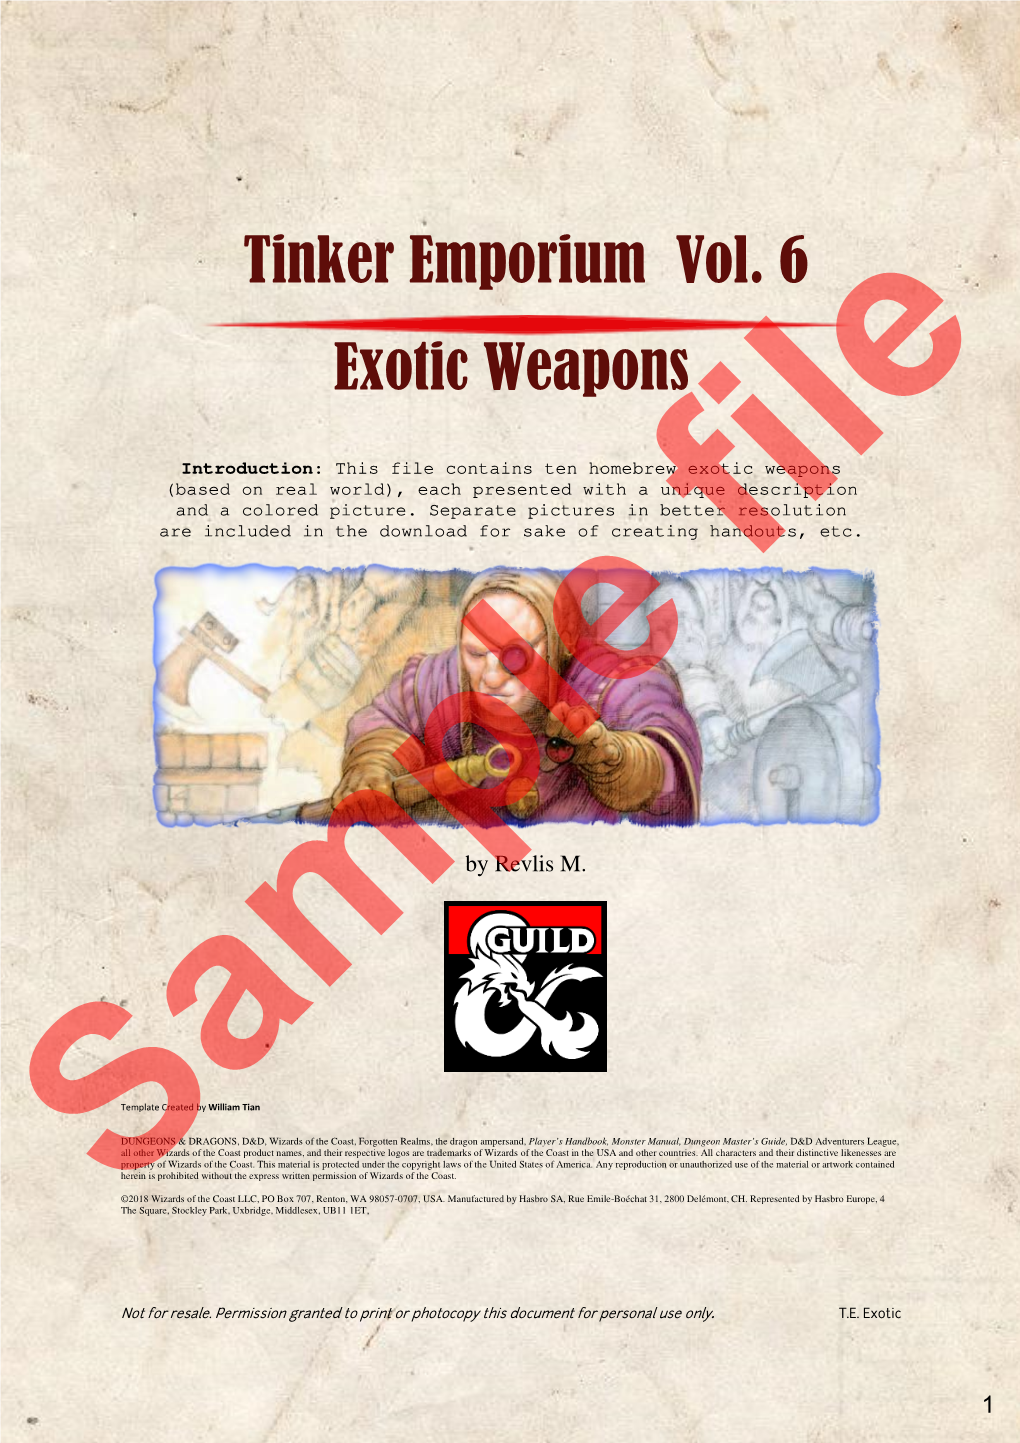 Tinker Emporium Exotic Tinker Emporium Vol. Exotic Weapons Vol. 6